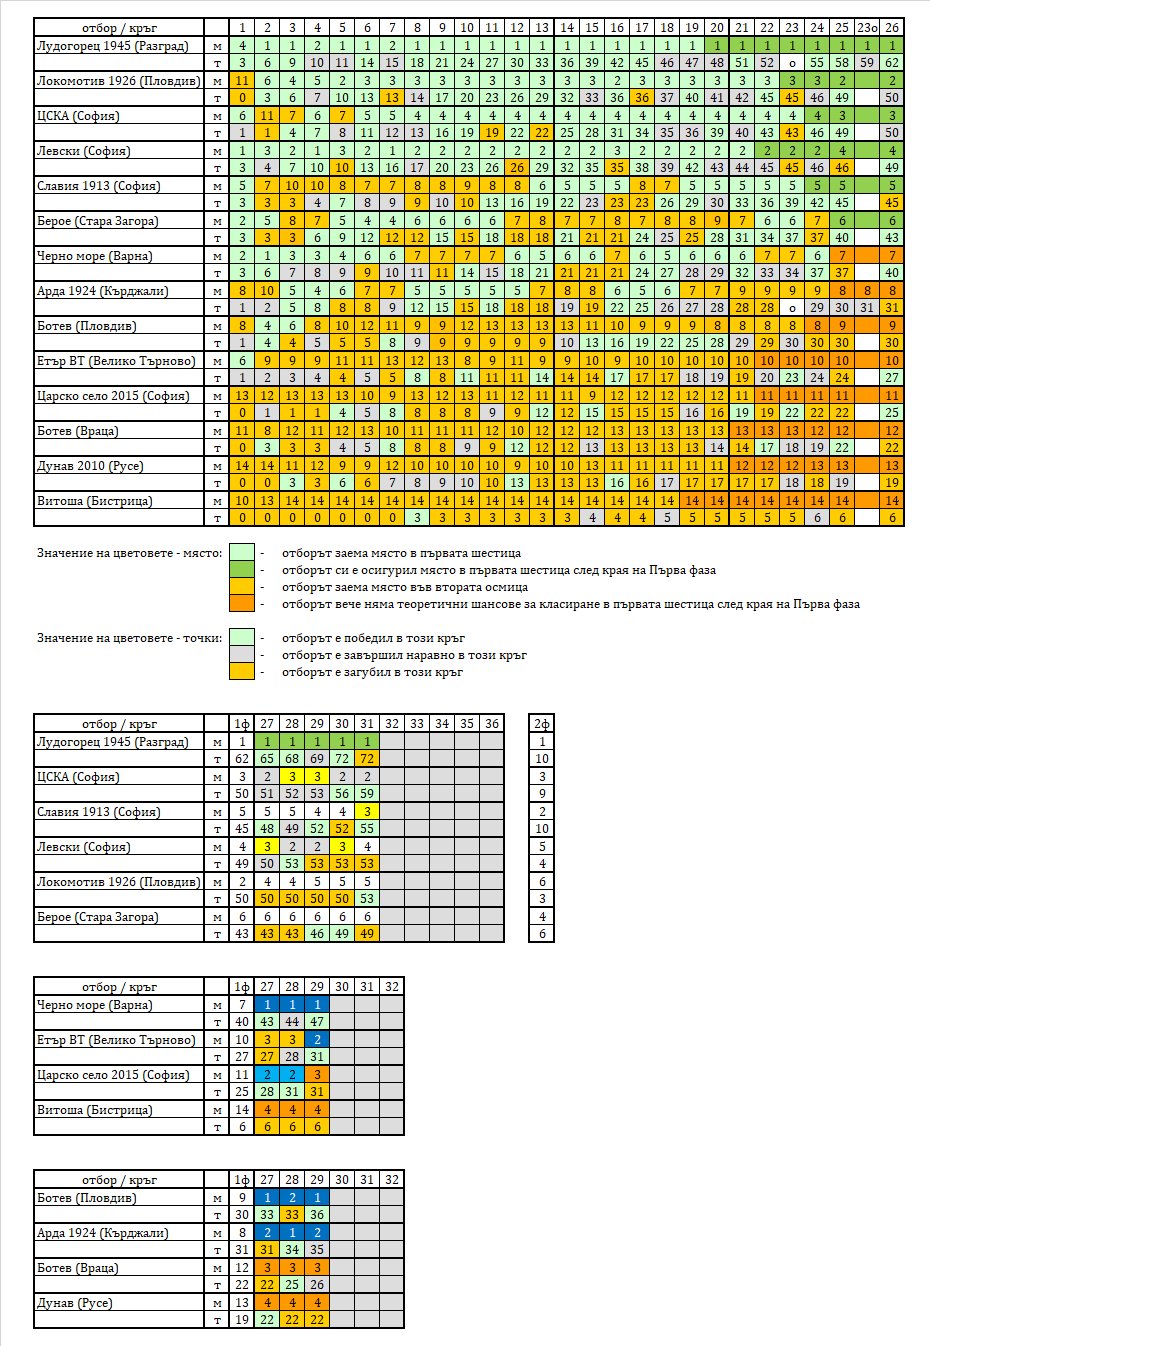 Таблица за развитието на класирането в Първа лига по кръгове